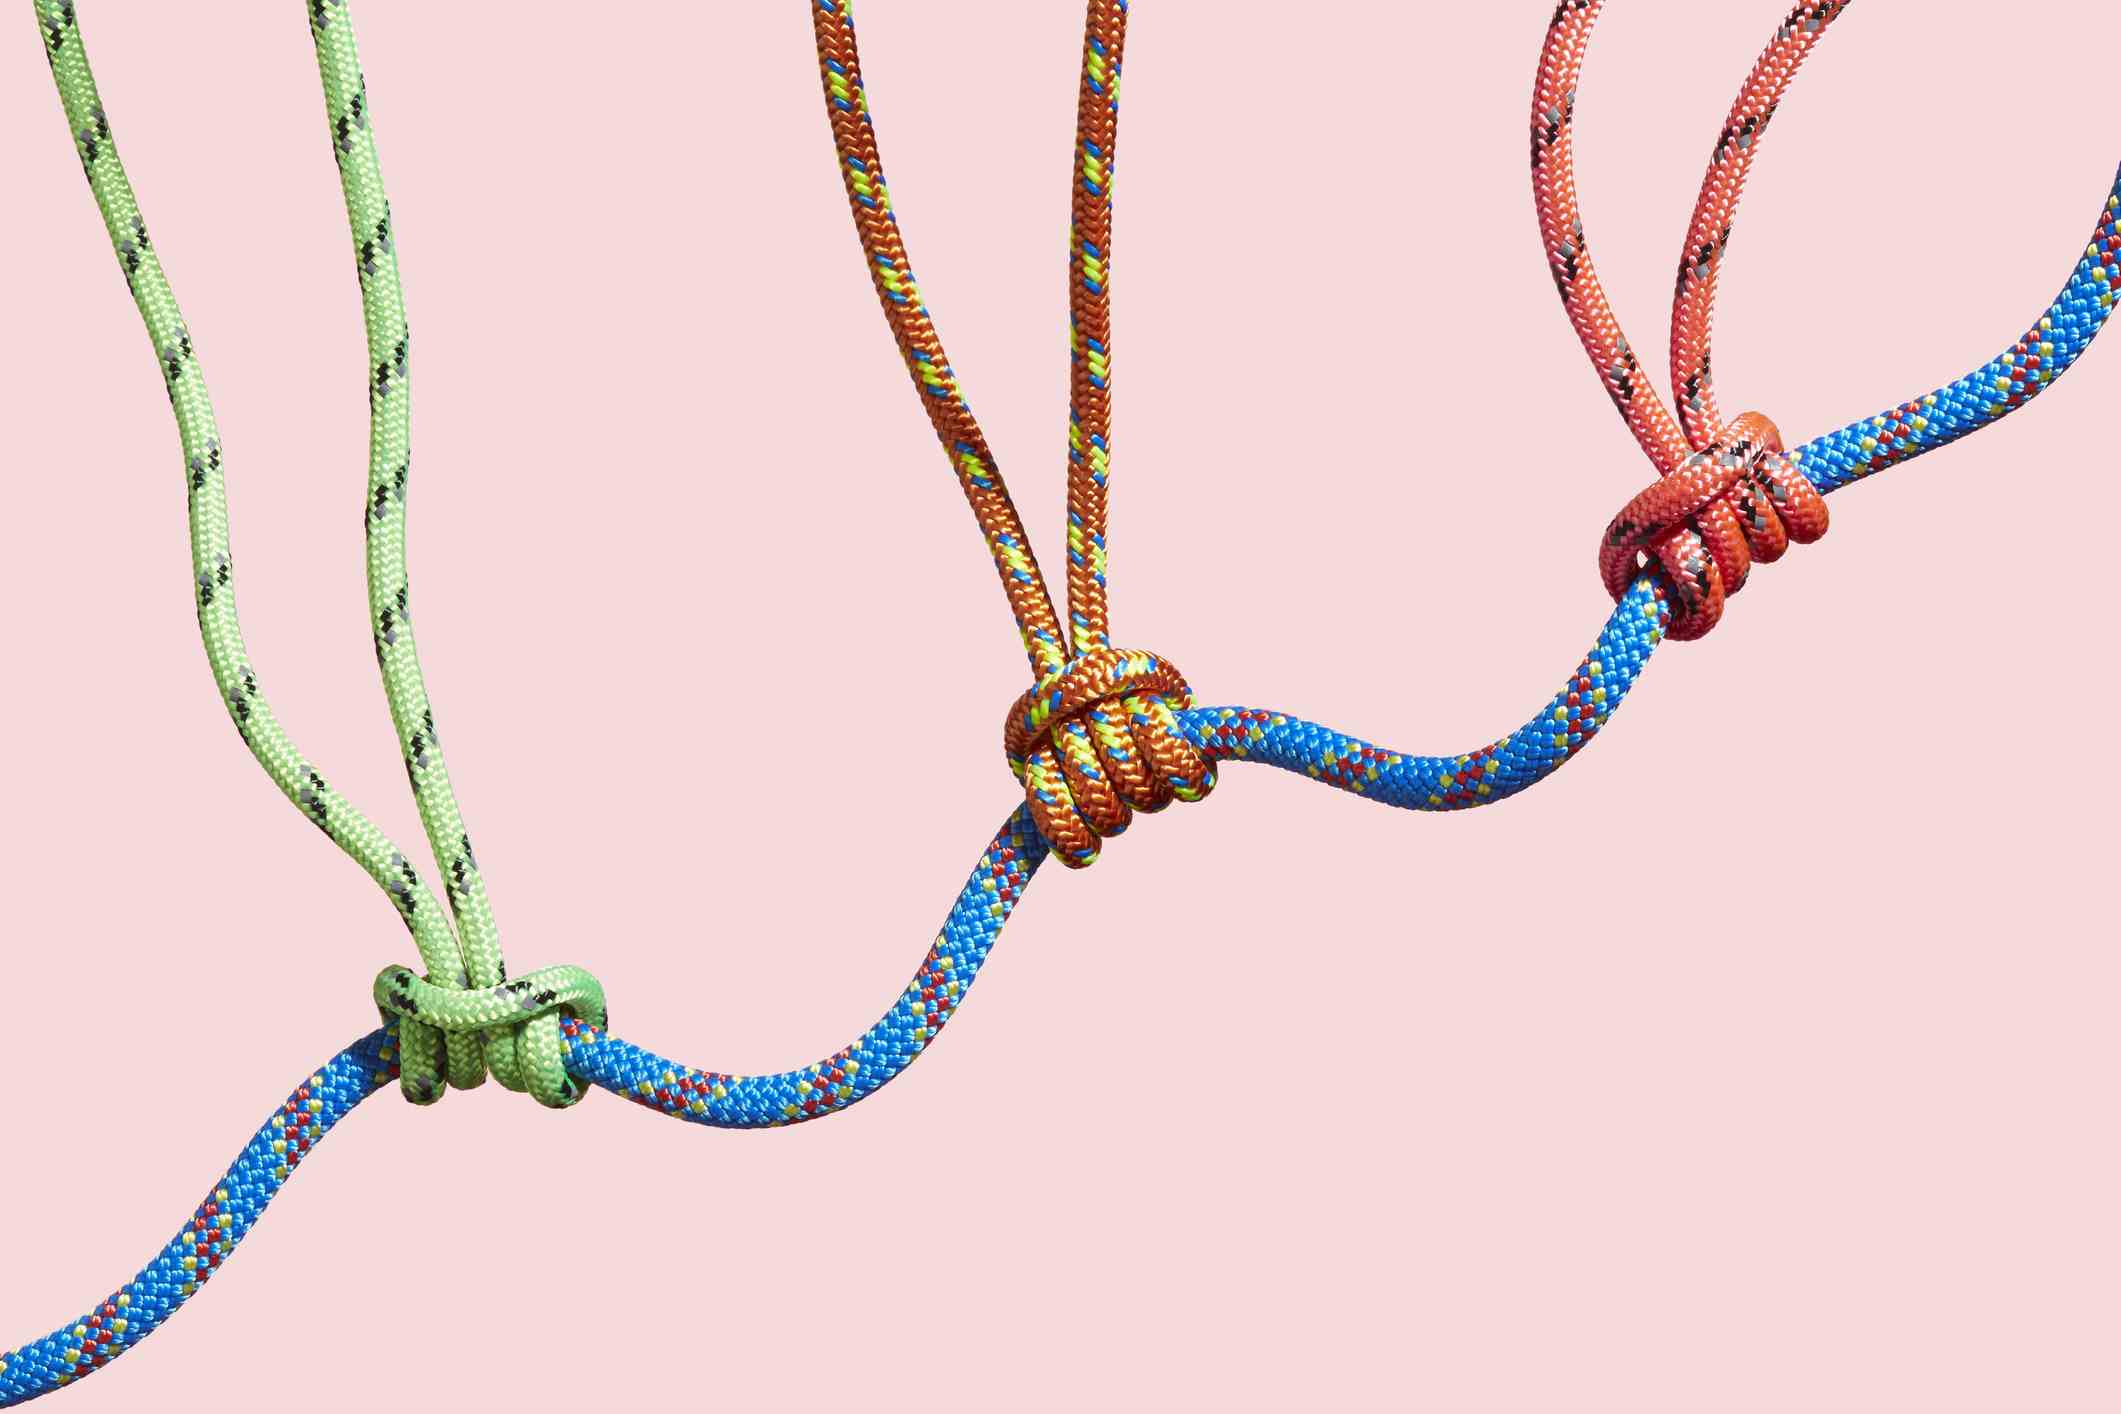 Drei farbige Seile, die ein größeres Seil stützen